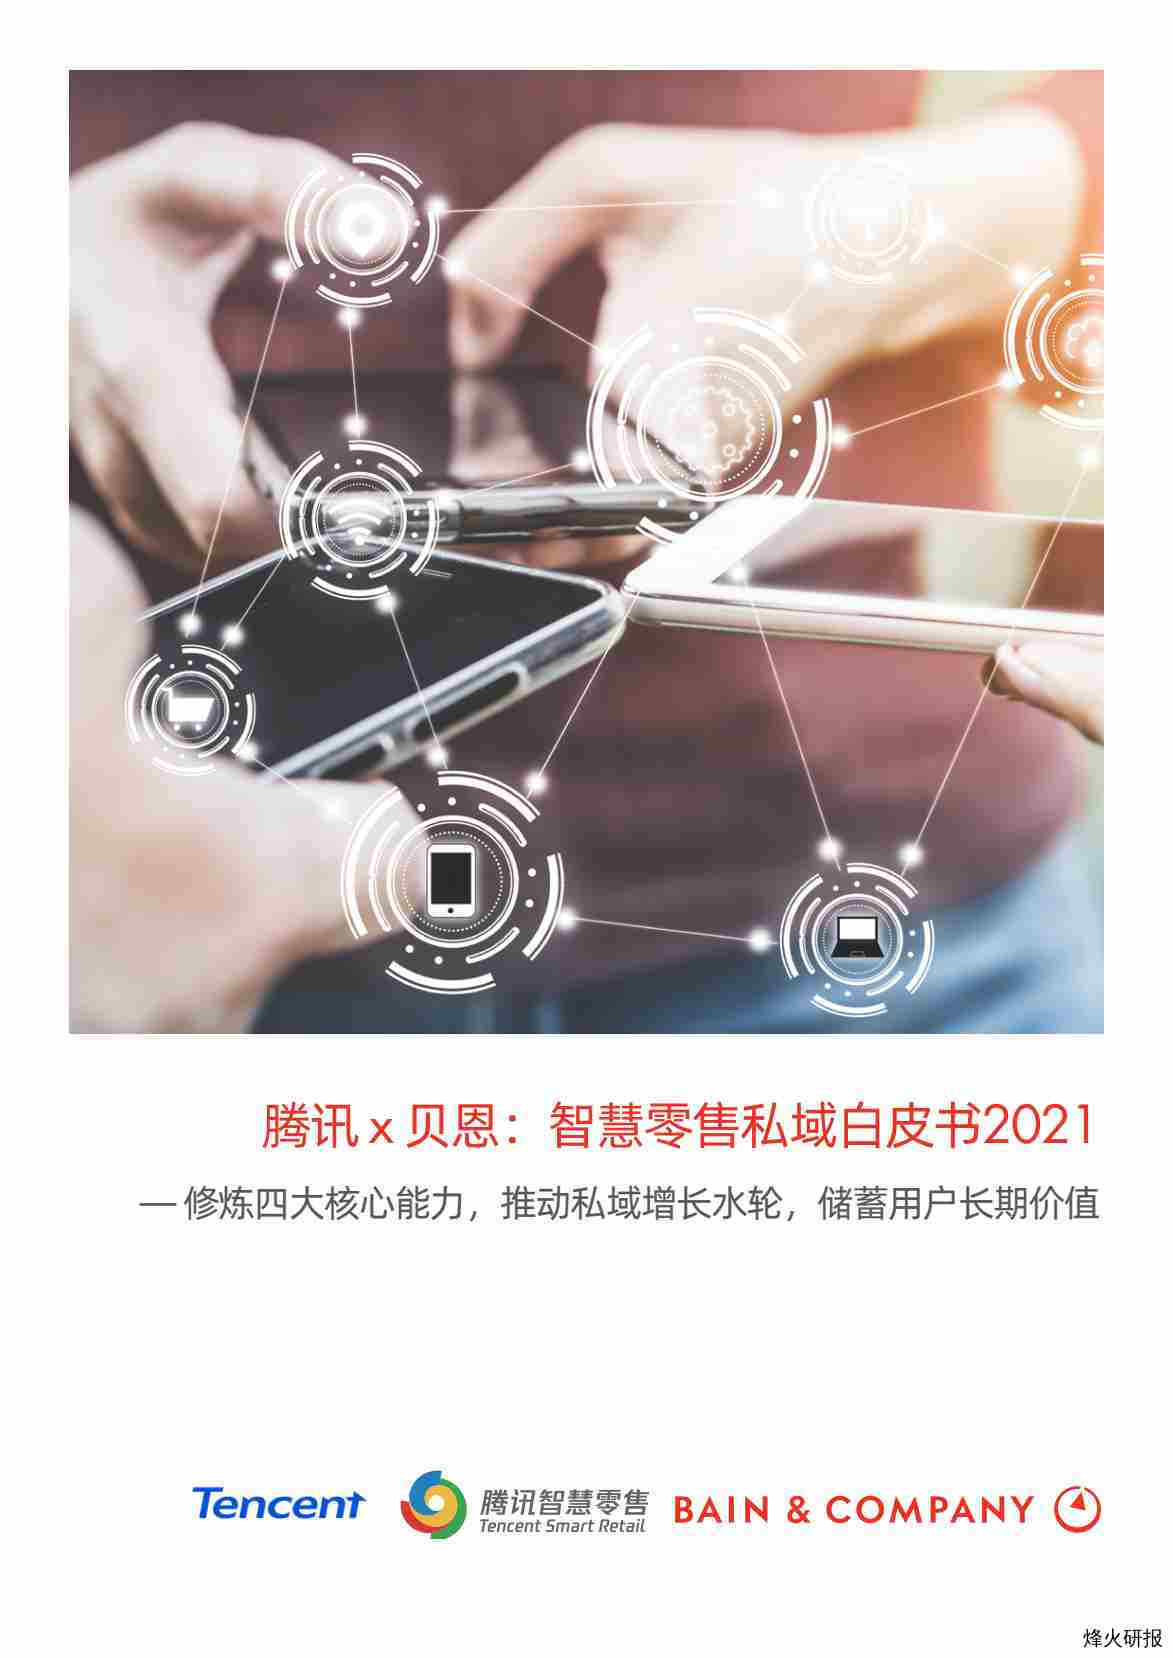 【贝恩公司】贝恩x腾讯智慧零售共同发布《智慧零售私域白皮书2021》.pdf-第一页